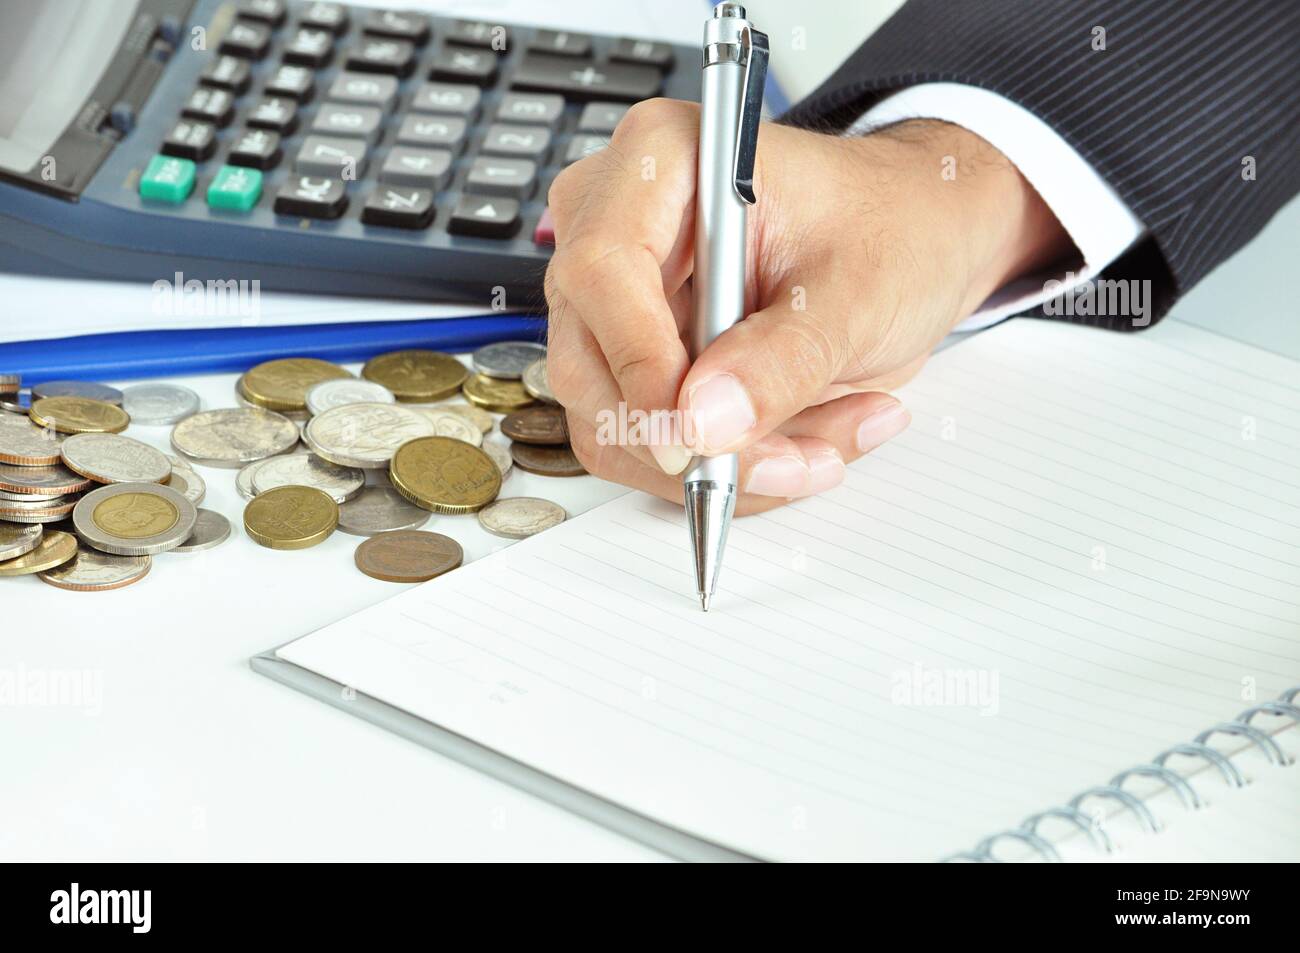 Main d'homme d'affaires tenant un stylo écrivant sur du papier vide avec pièces de monnaie et calculatrice - concept commercial et financier Banque D'Images